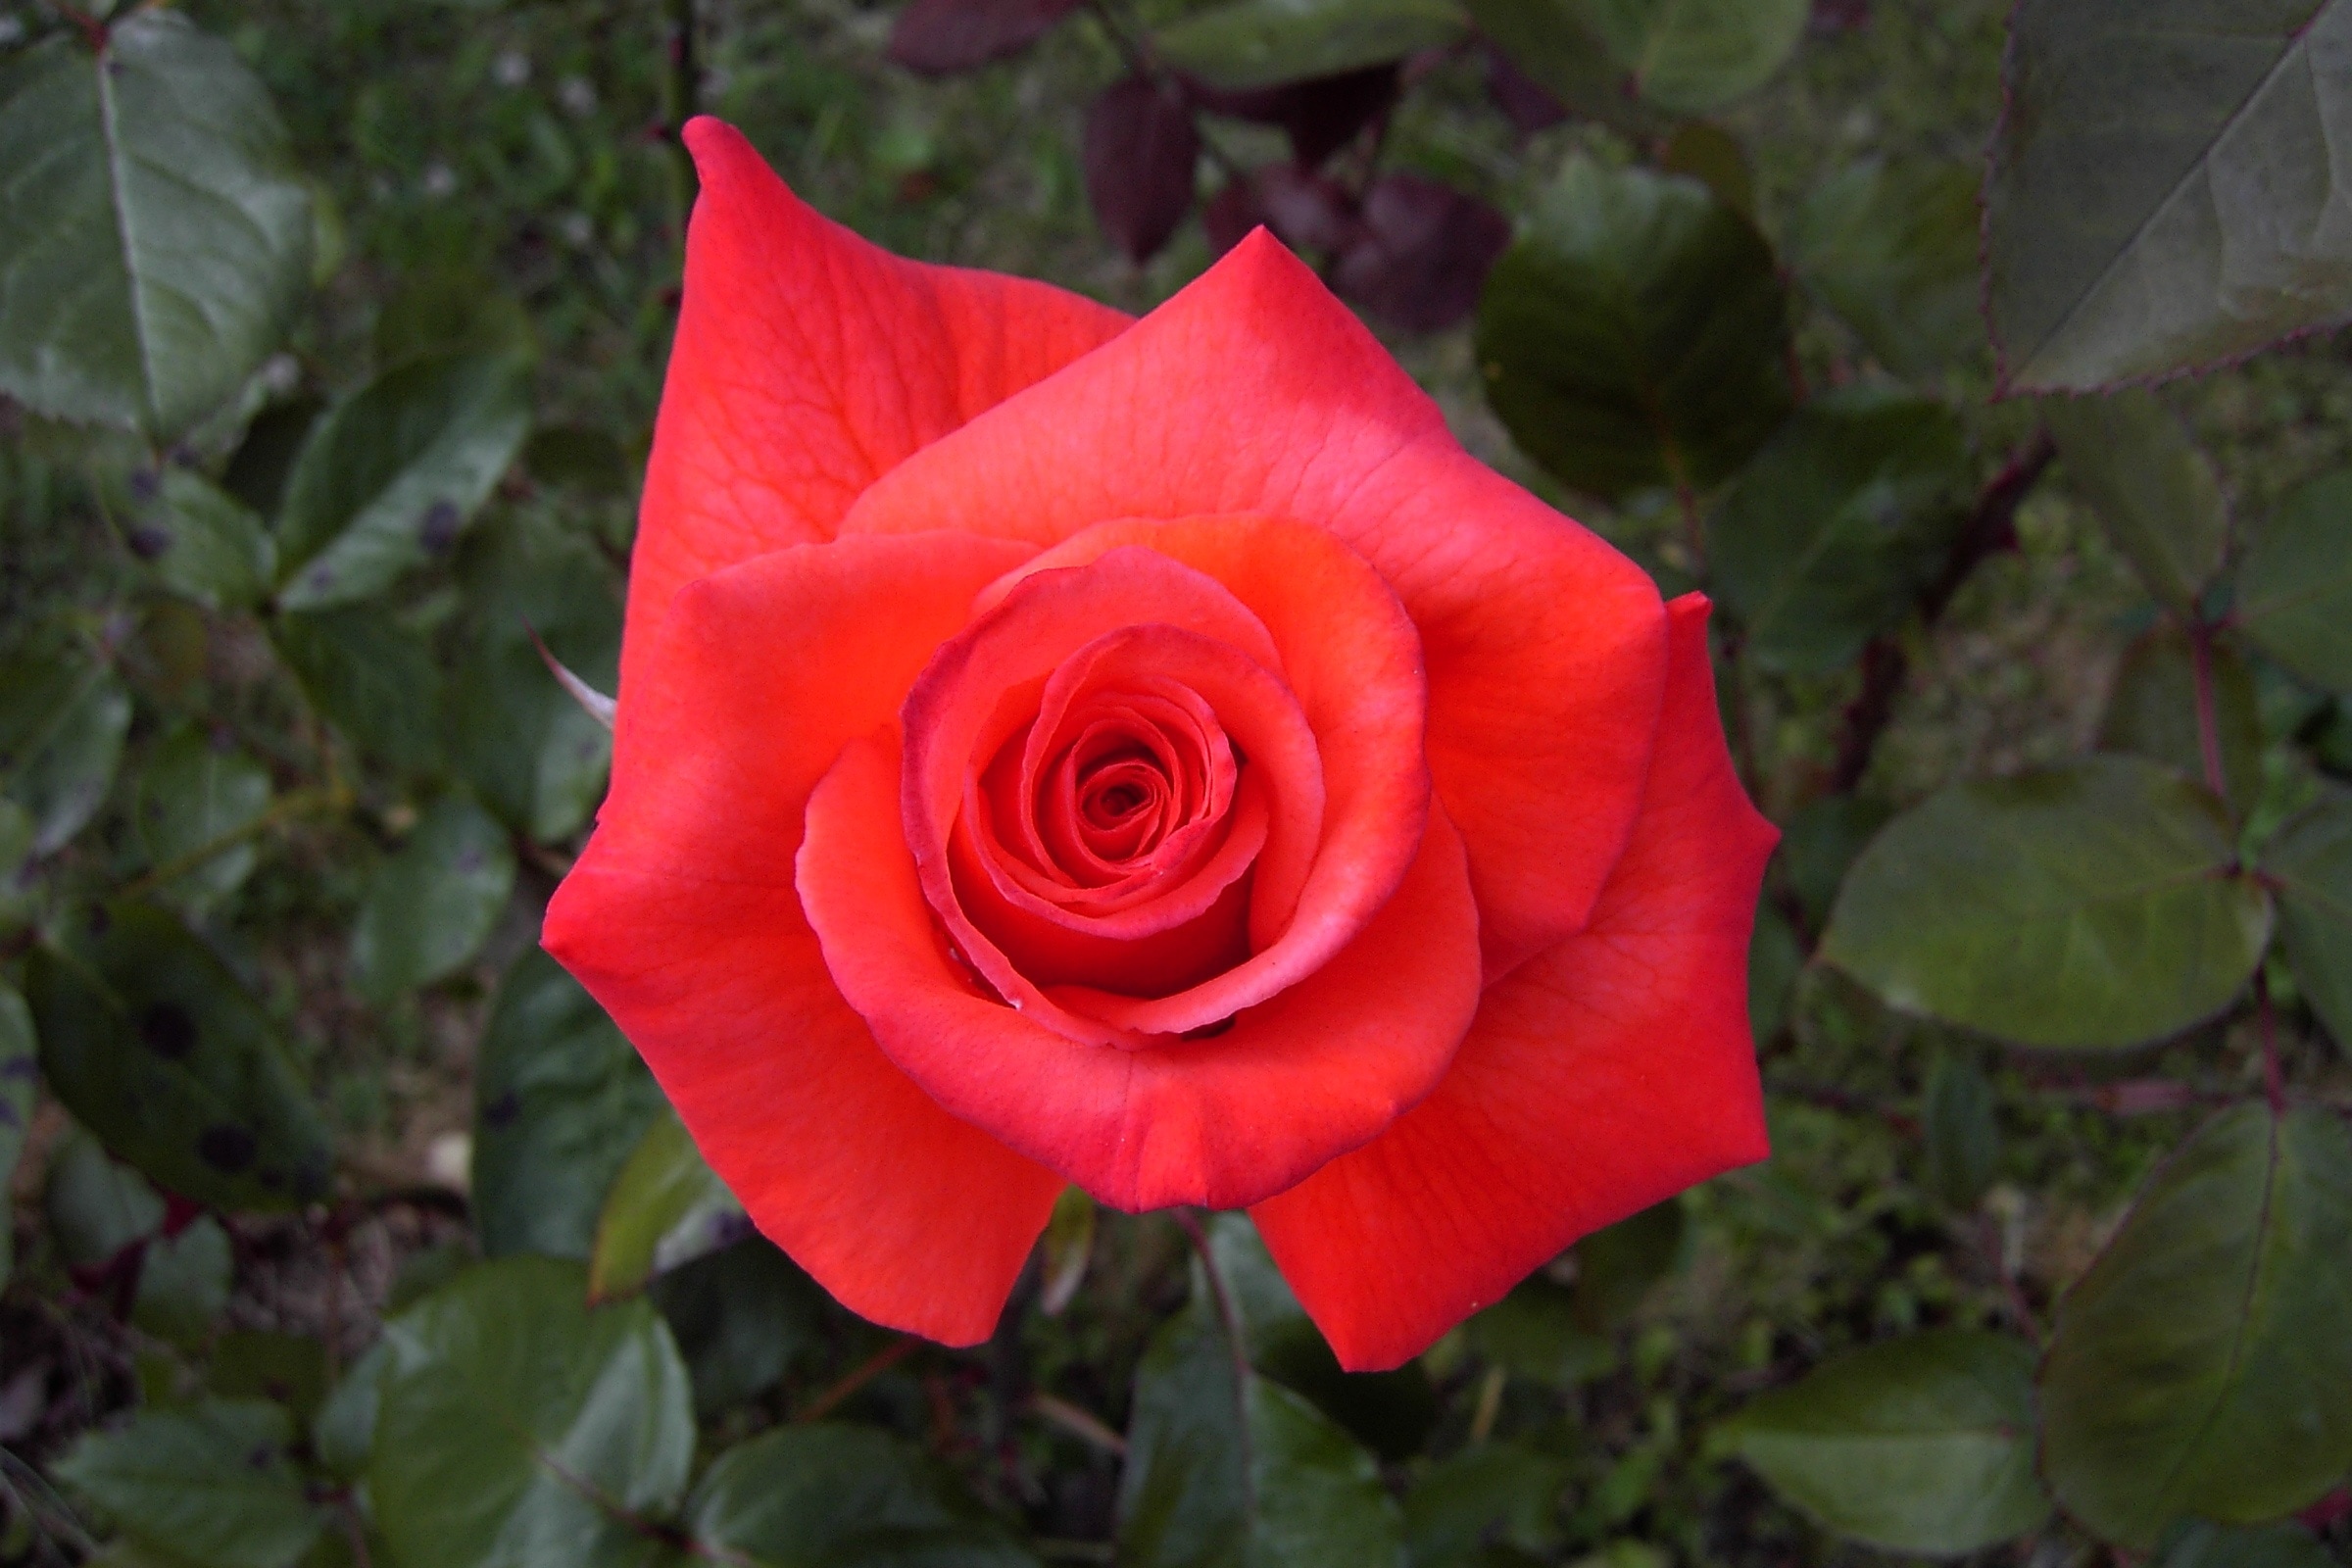 Red Rose, Flower, Plant, Red, Rose, Love, flower, rose - flower